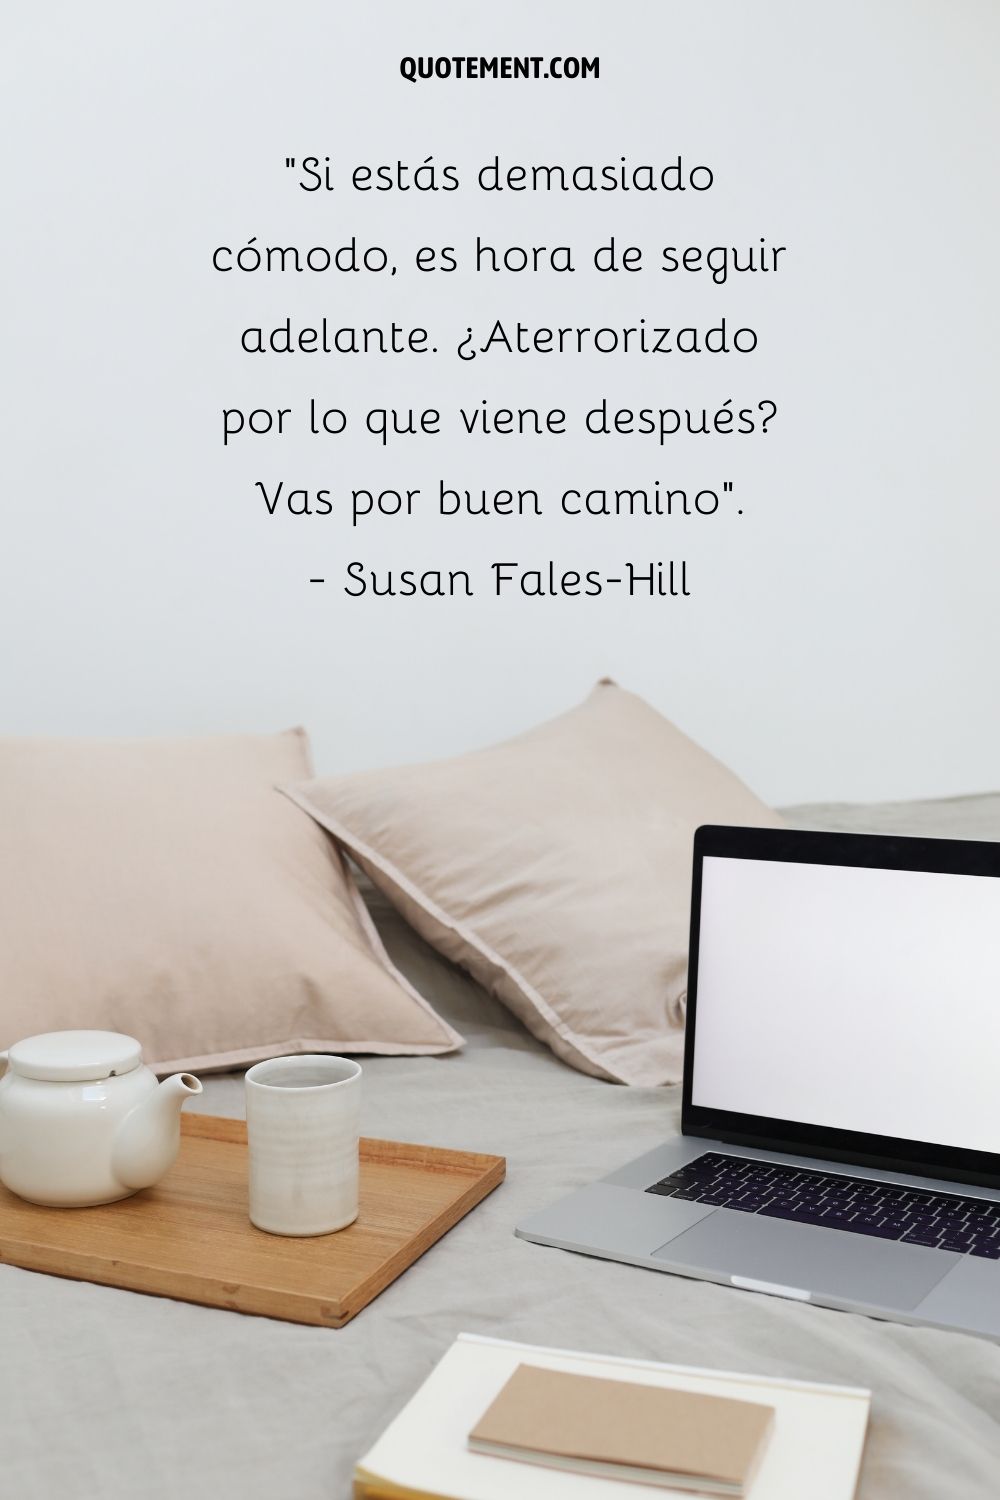 "Si estás demasiado cómodo, es hora de seguir adelante. Aterrorizado por lo que viene a continuación, vas por buen camino". - Susan Fales-Hill